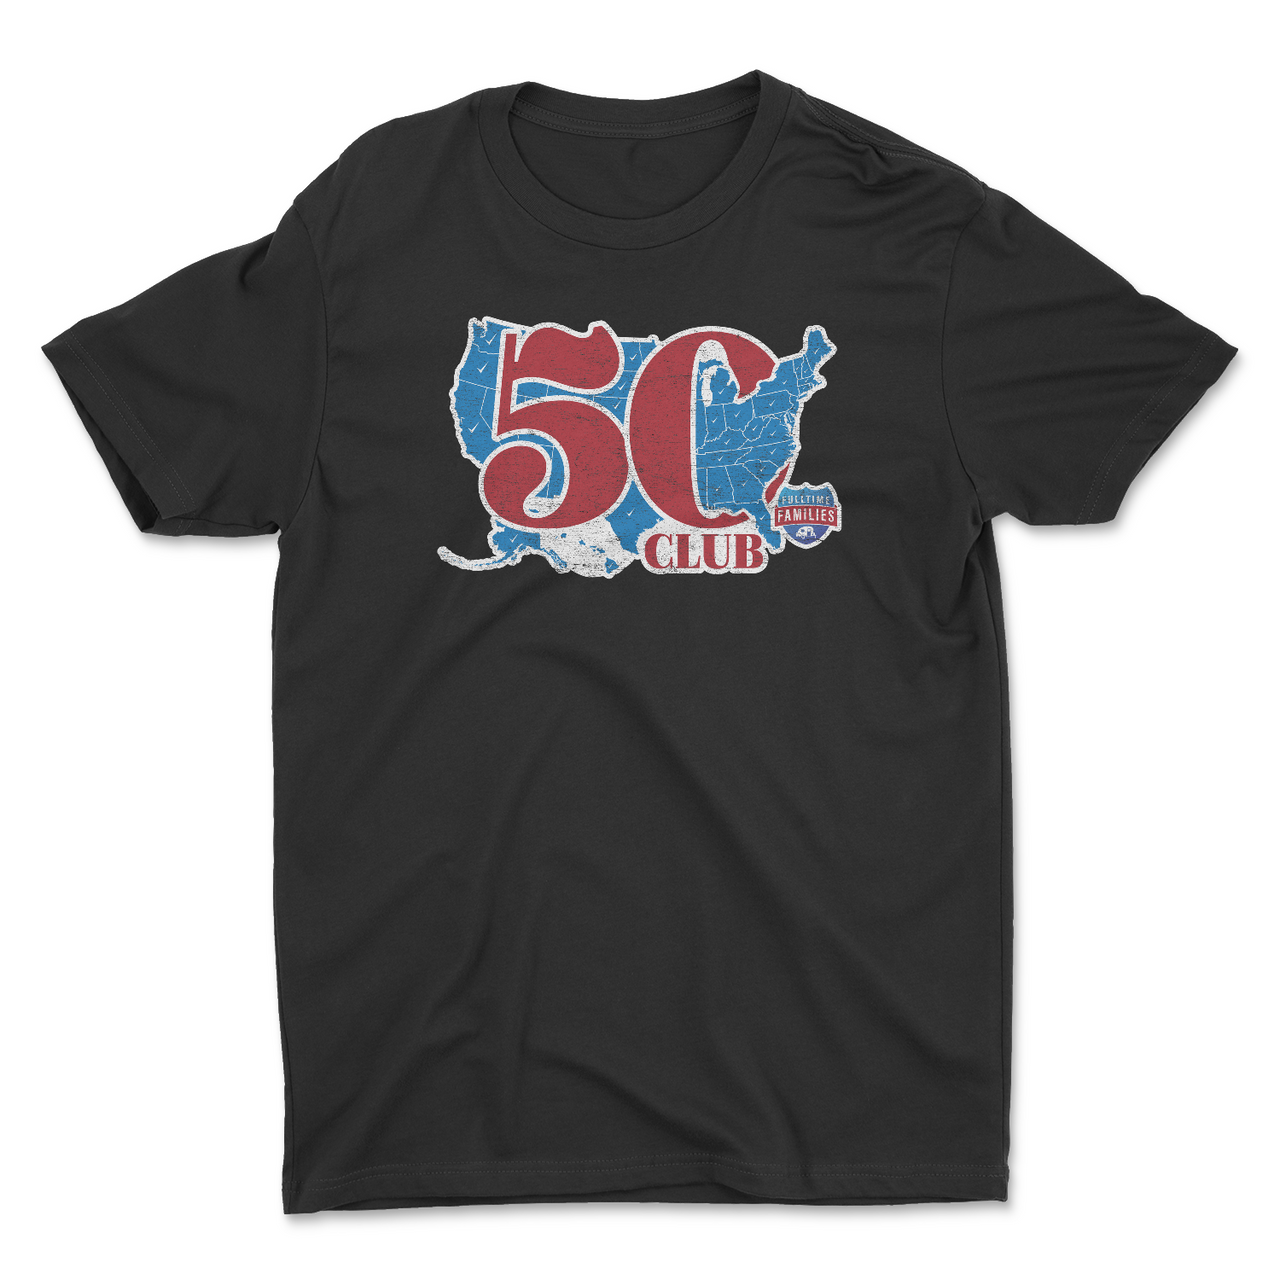 50 States Club Shirt